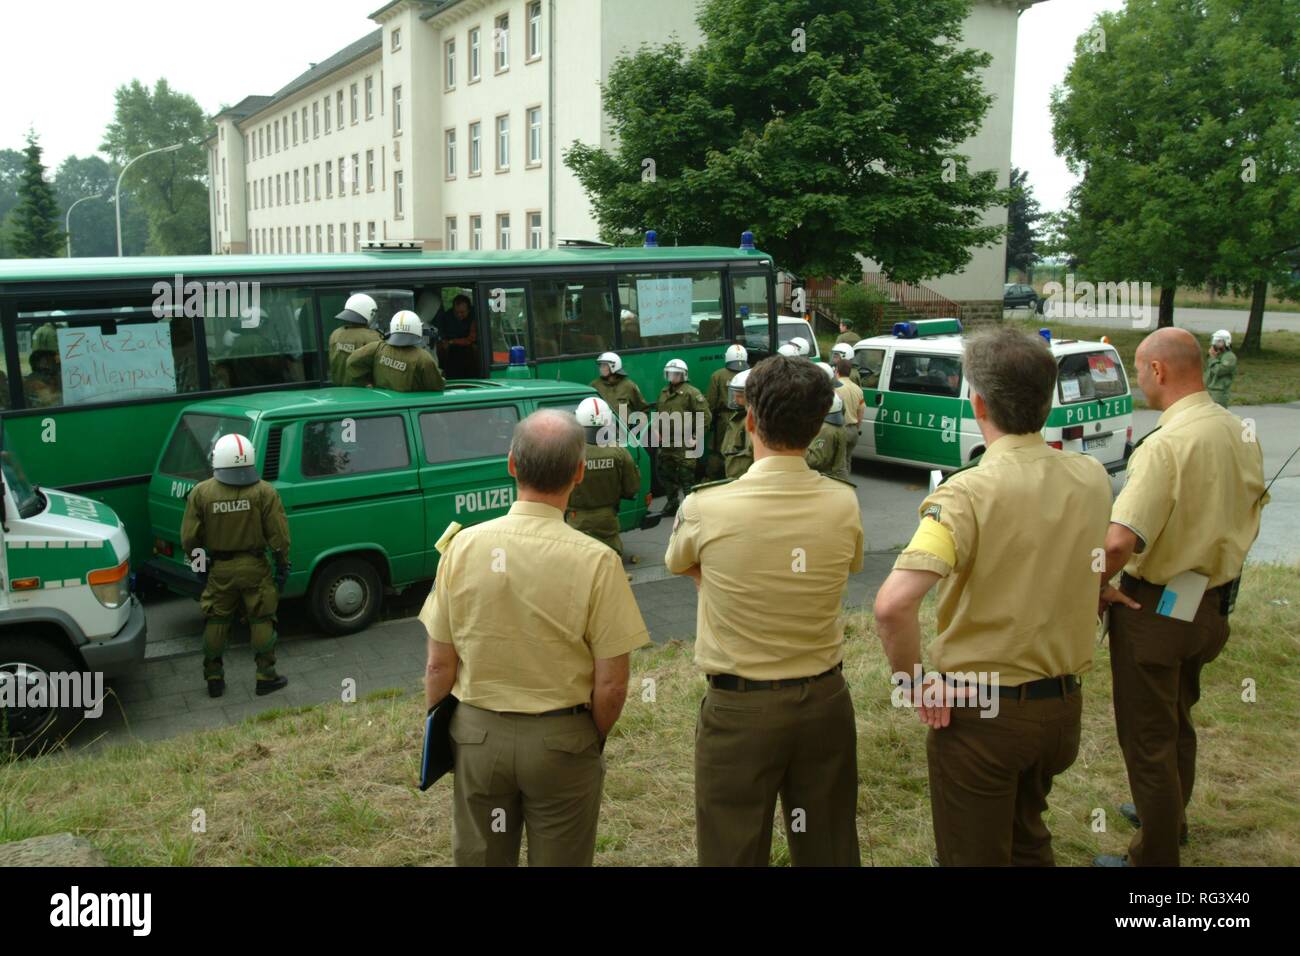 DEU, Germania : antisommossa unità di polizia, formazione in uno scenario realistico di una dimostrazione con i manifestanti violenti. Foto Stock